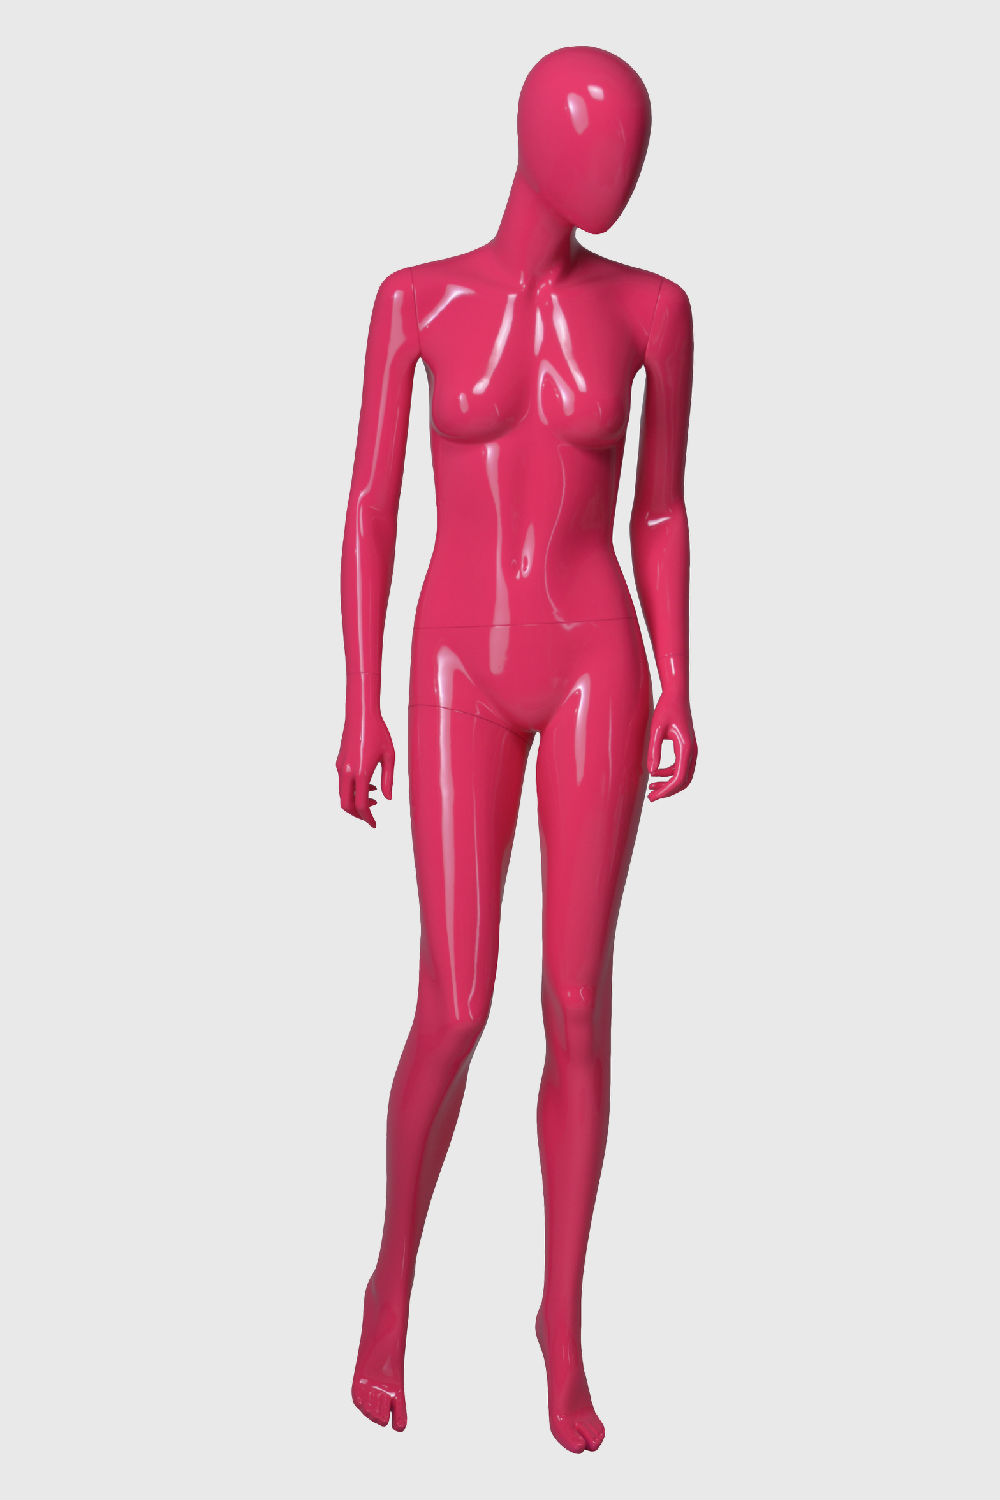 亮光粉红色模特道具女 橱窗服装展示道具 女装模特道具